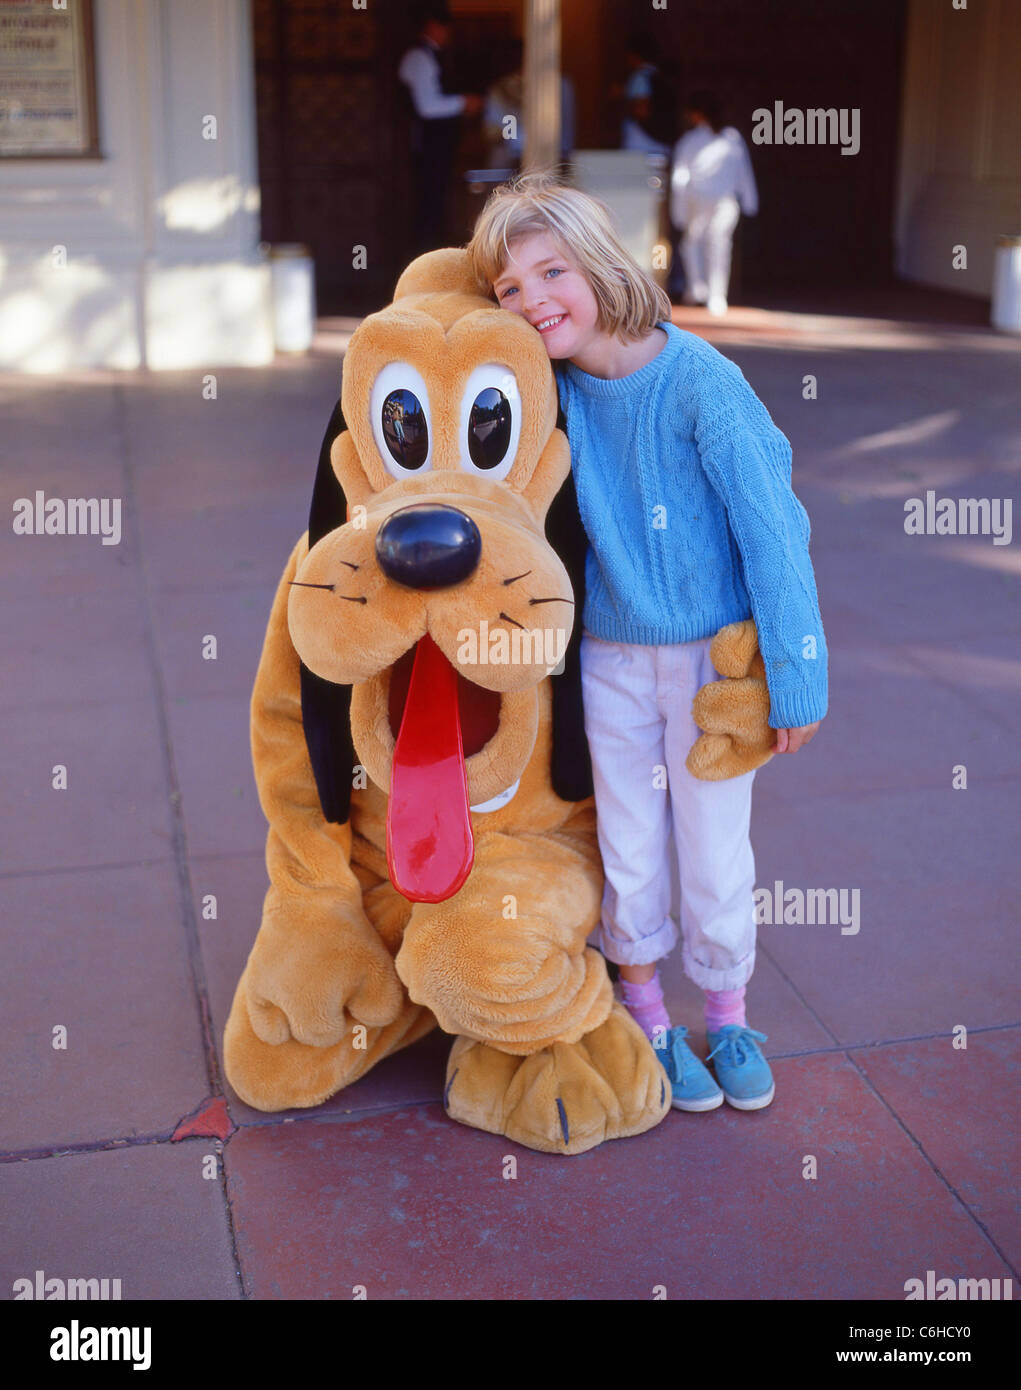 Niña con carácter Plutón, Fantasyland, Disneyland, Anaheim, California, Estados Unidos de América Foto de stock